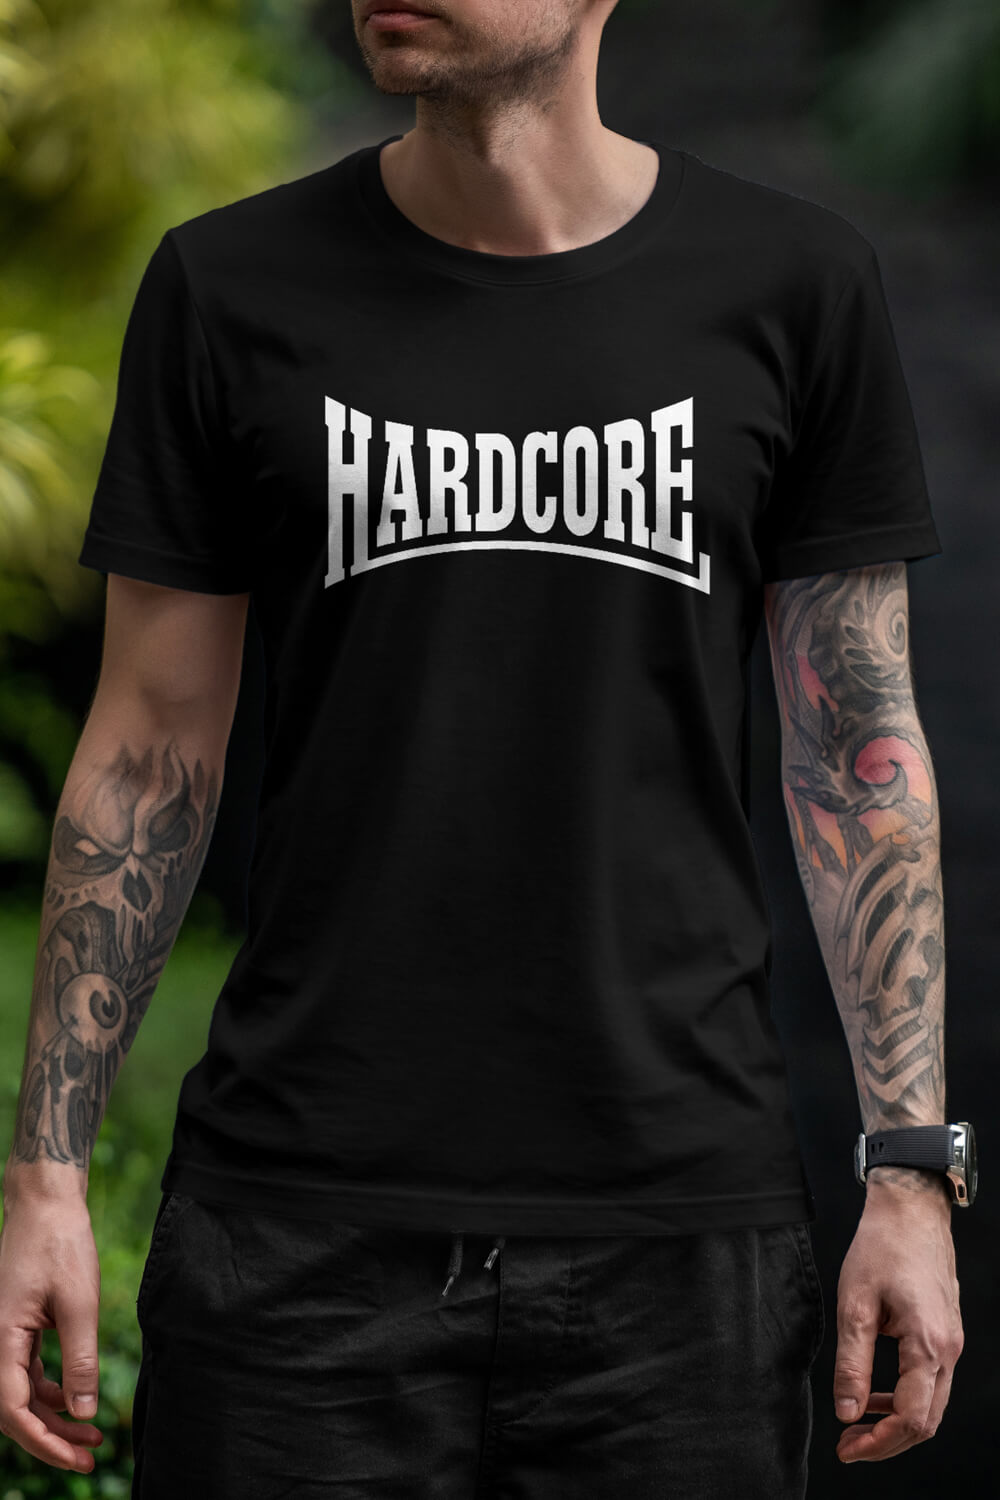 Comprar camisetas para ravers en bearaver descubre la tag de camisetas hardcore Buy Rave t shirts selection just for hardcore style